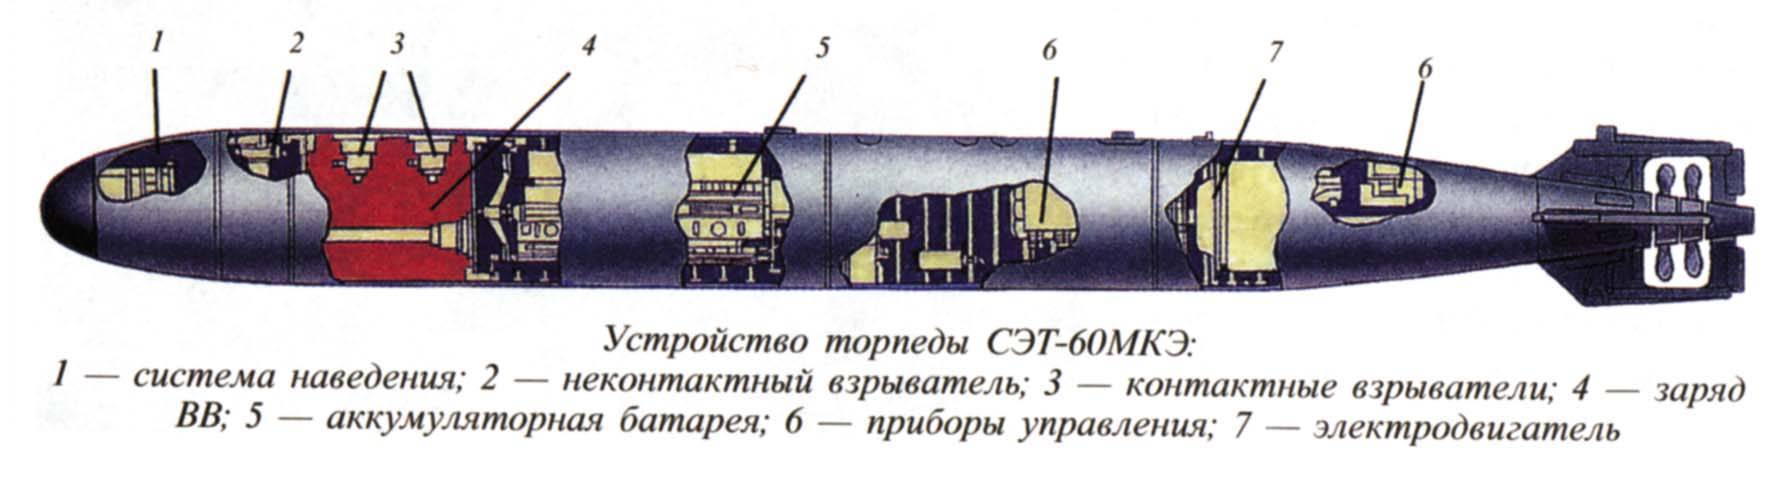 Торпеда 53-57 - allmines